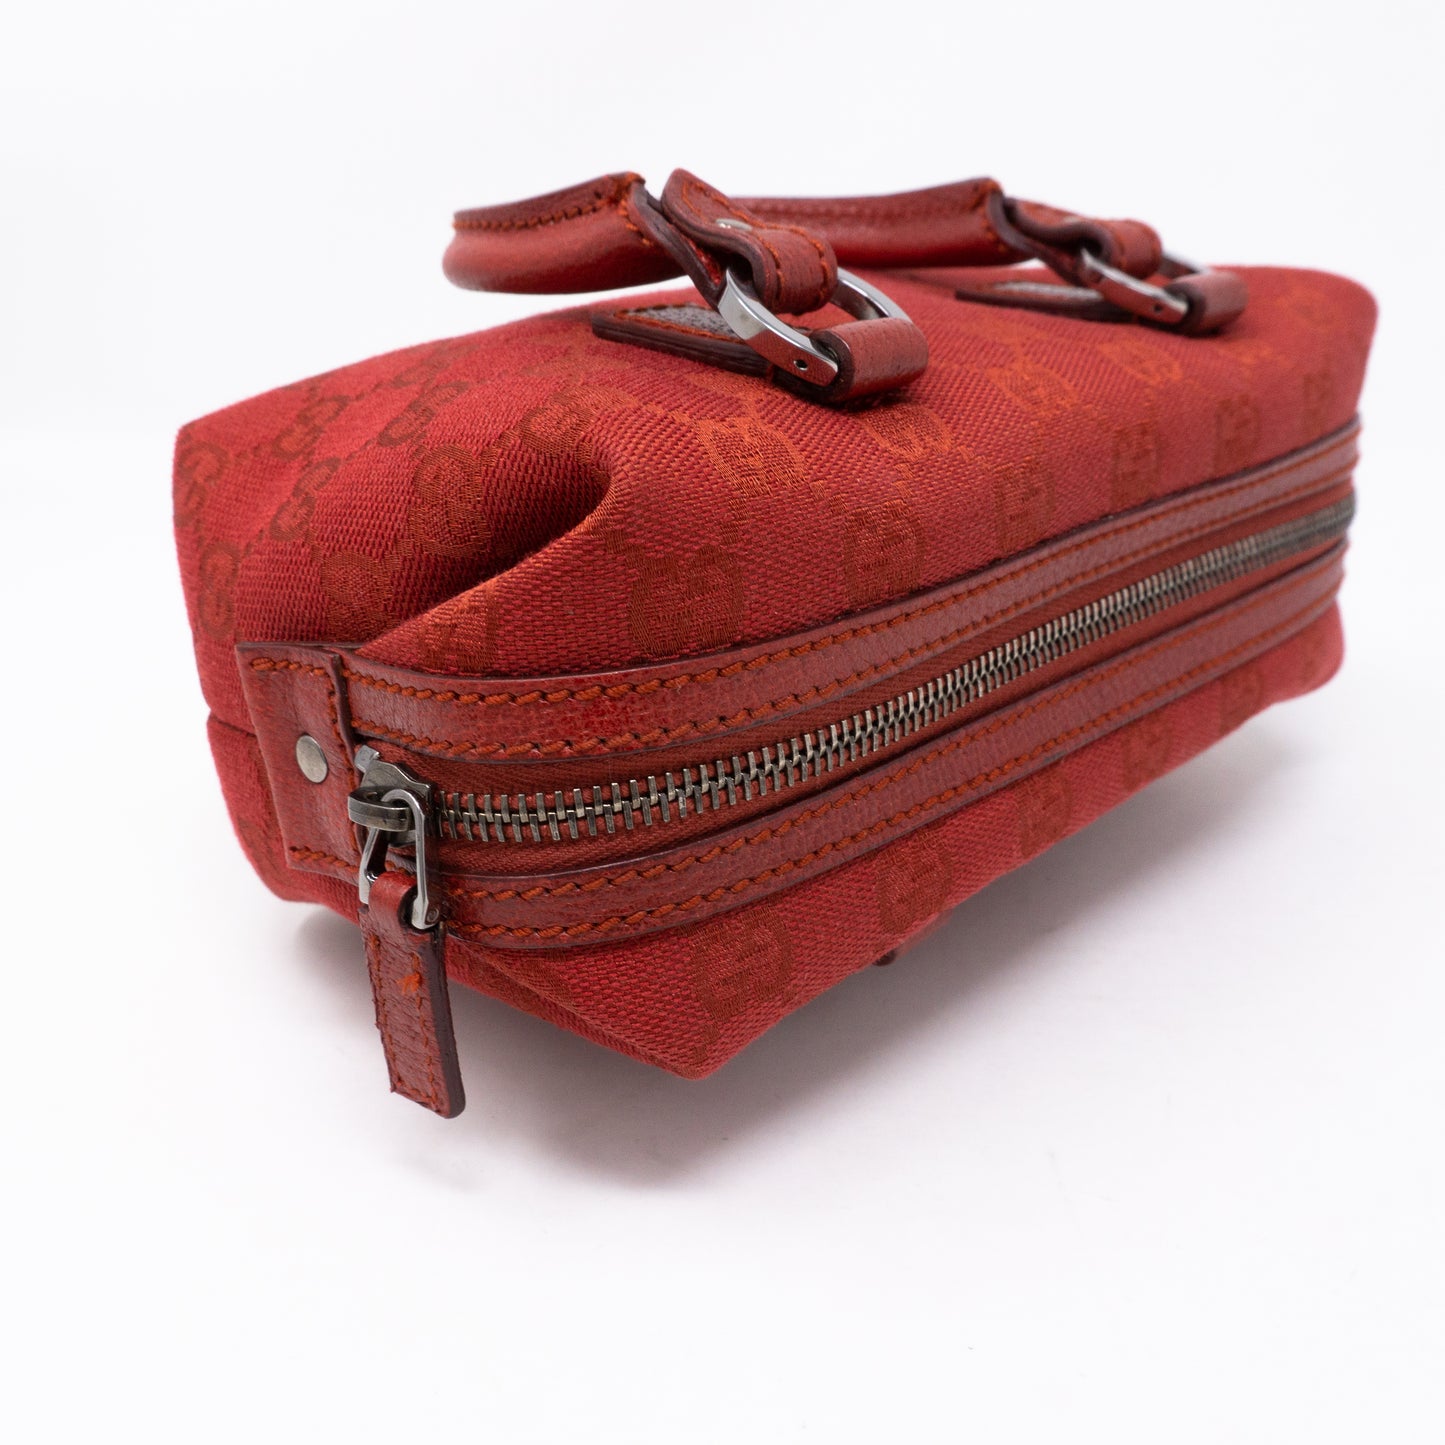 Mini Boston Red Canvas Bag